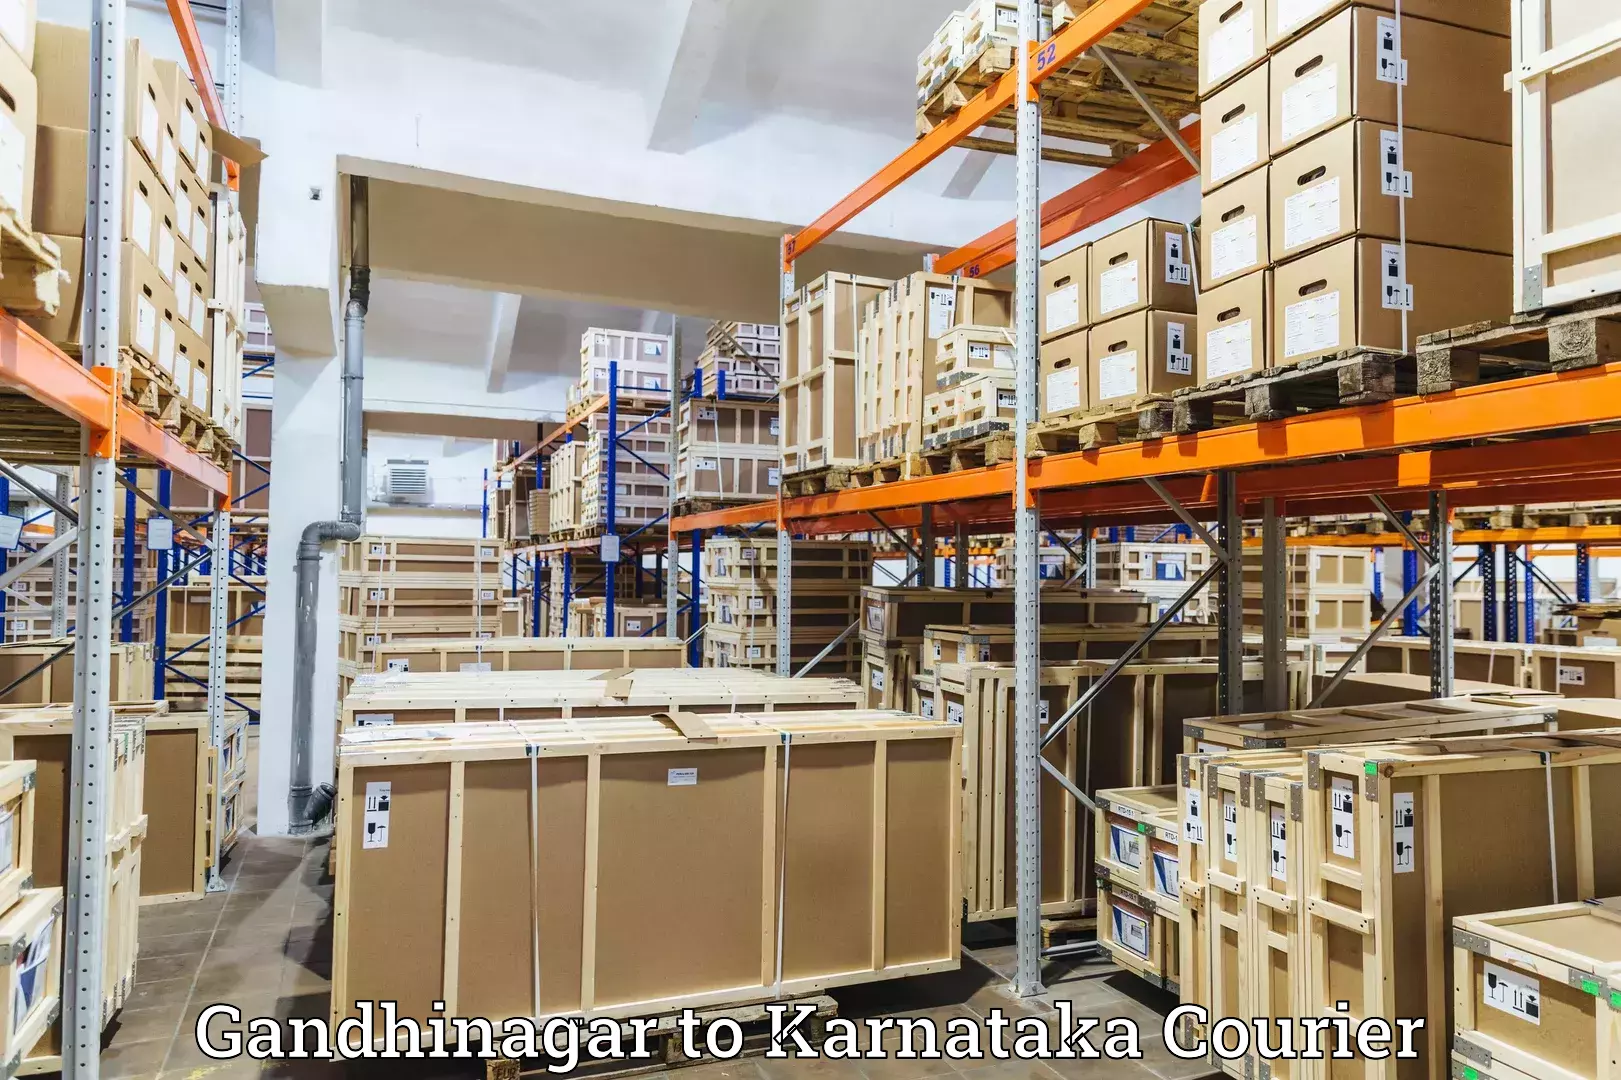 Nationwide shipping capabilities Gandhinagar to Athani